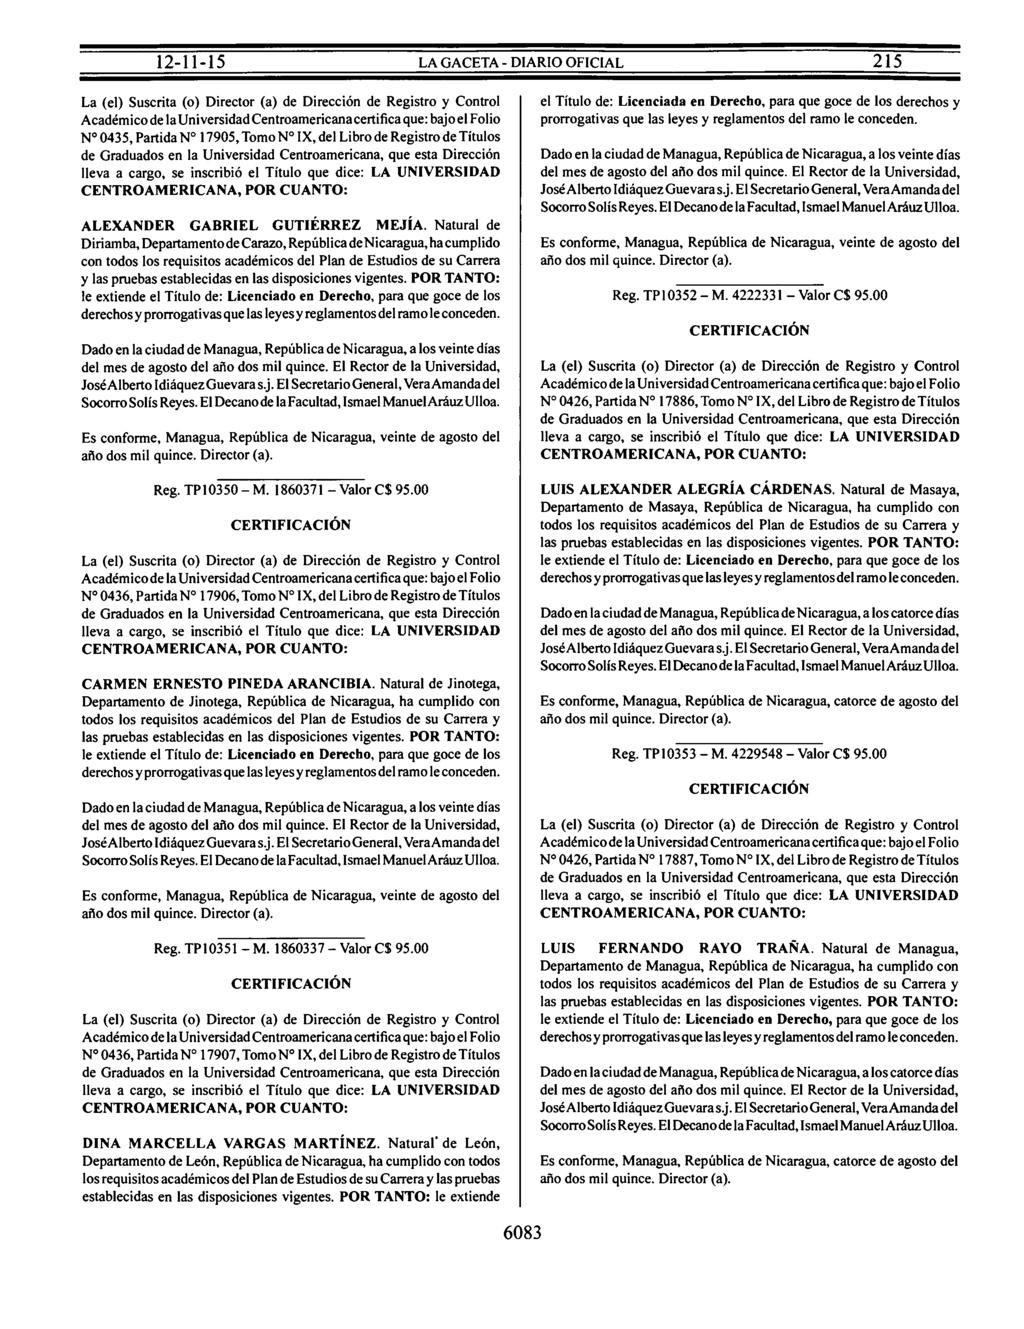 Nº 0435, Partida Nº 17905, Tomo Nº IX, del Libro de Registro de Títulos ALEXANDER GABRIEL GUTIÉRREZ MEJÍA.